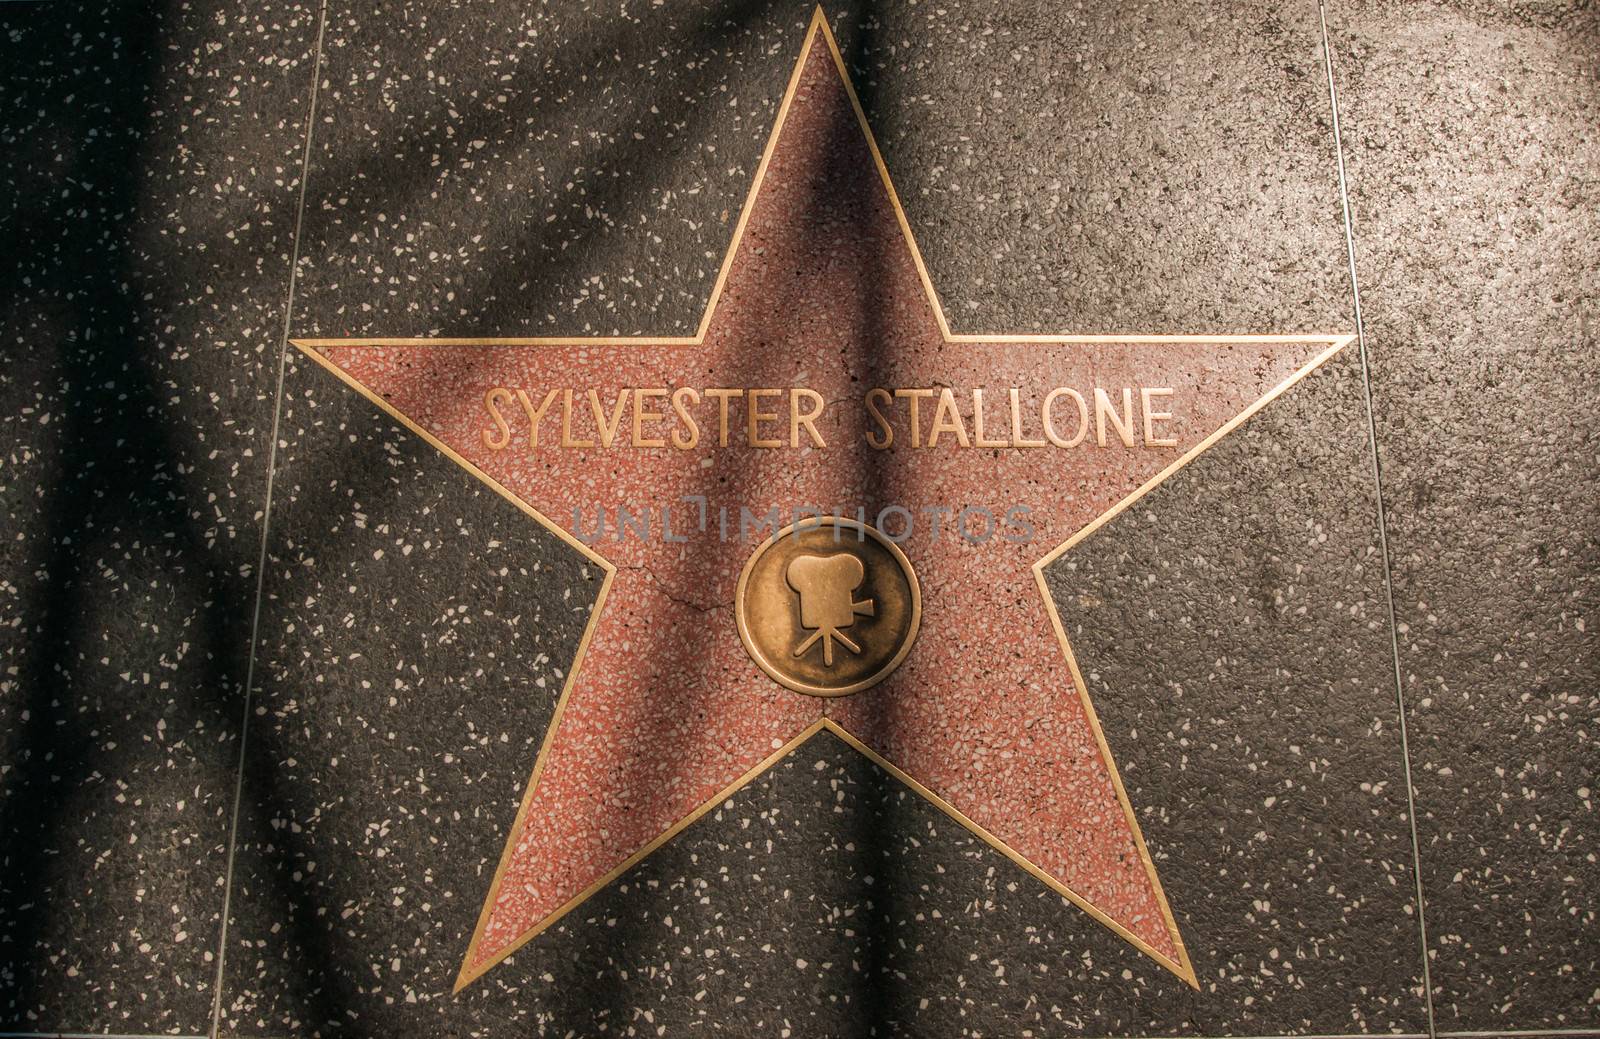 Sylvester Stallone Hollywood Star by weltreisendertj